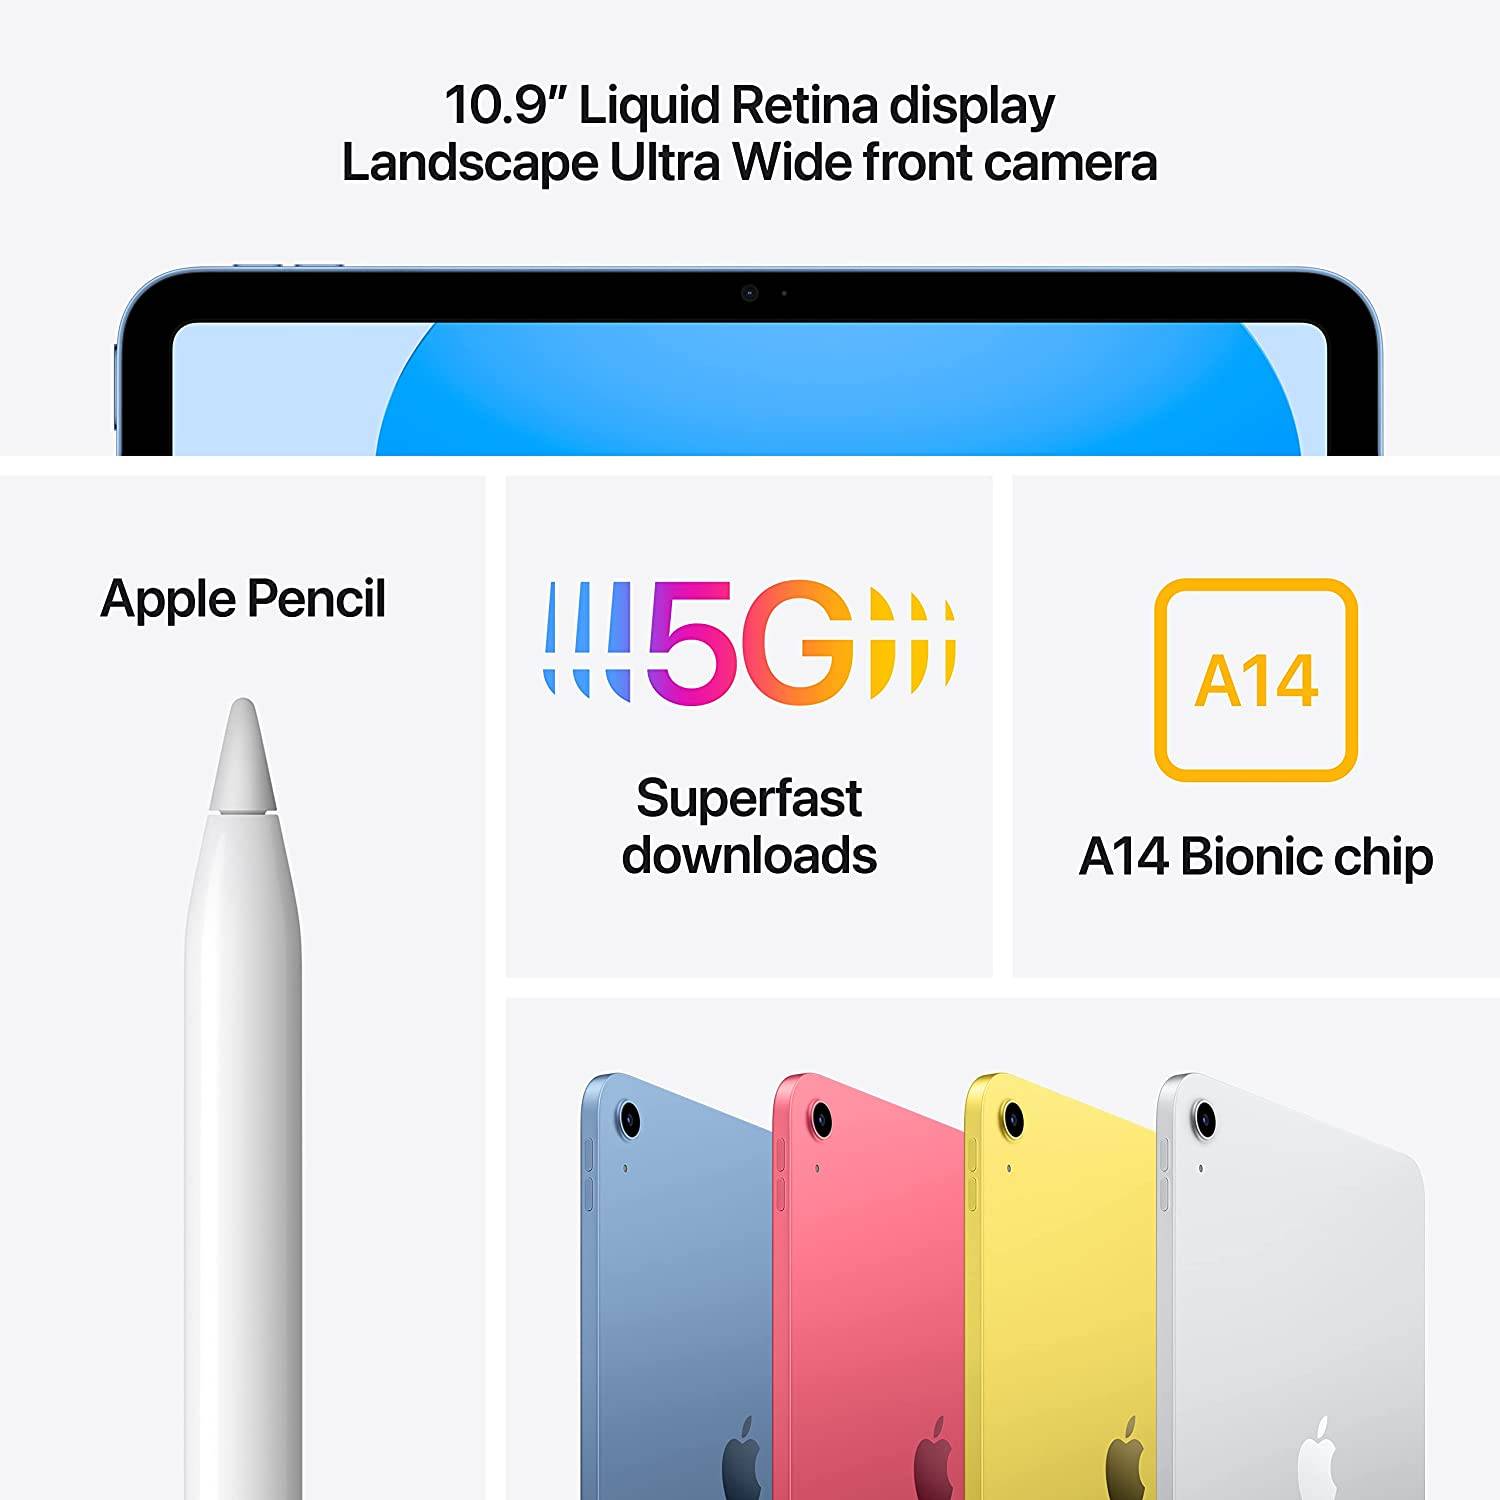 Apple iPad 10.9-Inch 64GB Wi-Fi Silver - MPQ03LL/A